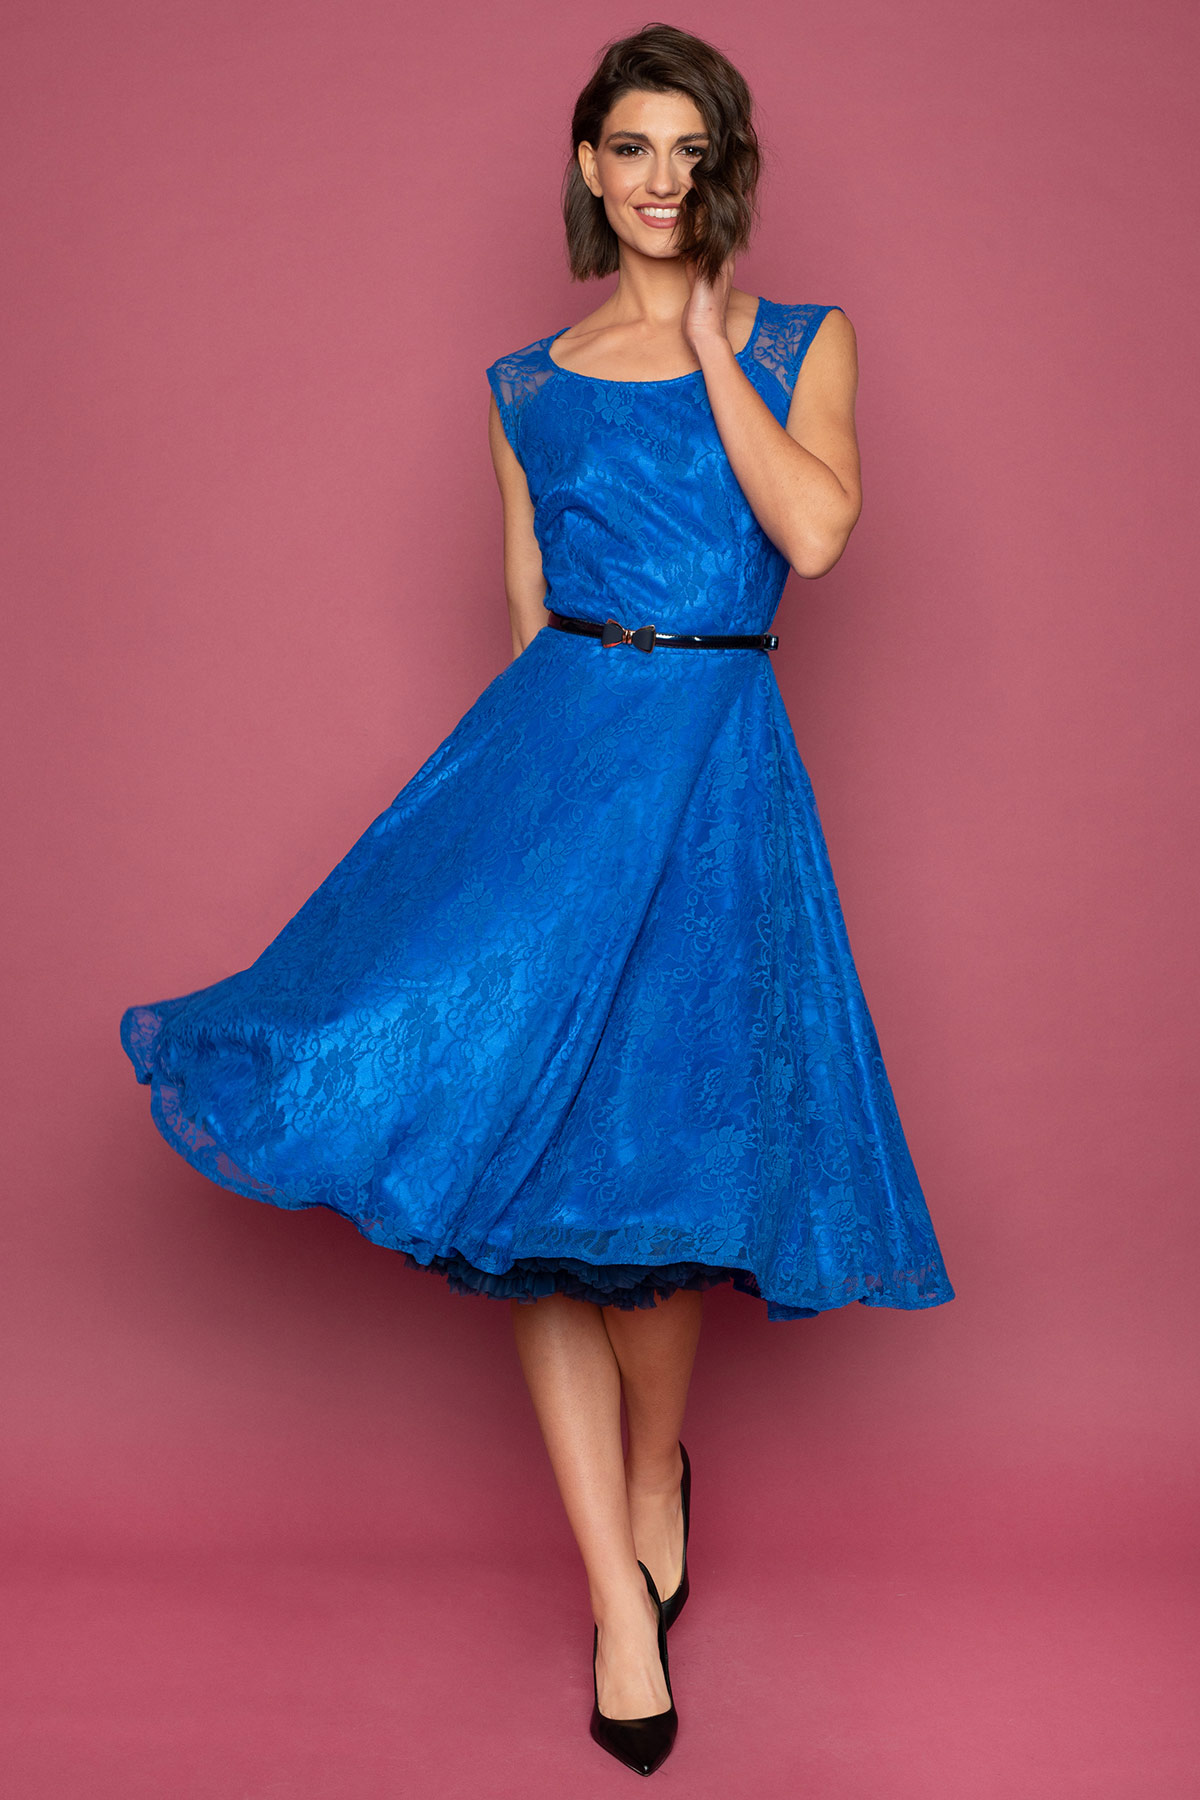 Δαντελένιο vintage φόρεμα σε μεσάτη γραμμή, από υπέροχη μπλε ελεκτρίκ δαντέλα και μήκος μέχρι το γόνατο, αμάνικο με διαφάνεια στους ώμους και στρογγυλή λαιμουδιά, είναι το πιο chic φόρεμα για να συνοδεύσει μια επίσημη εμφάνισή σας. 